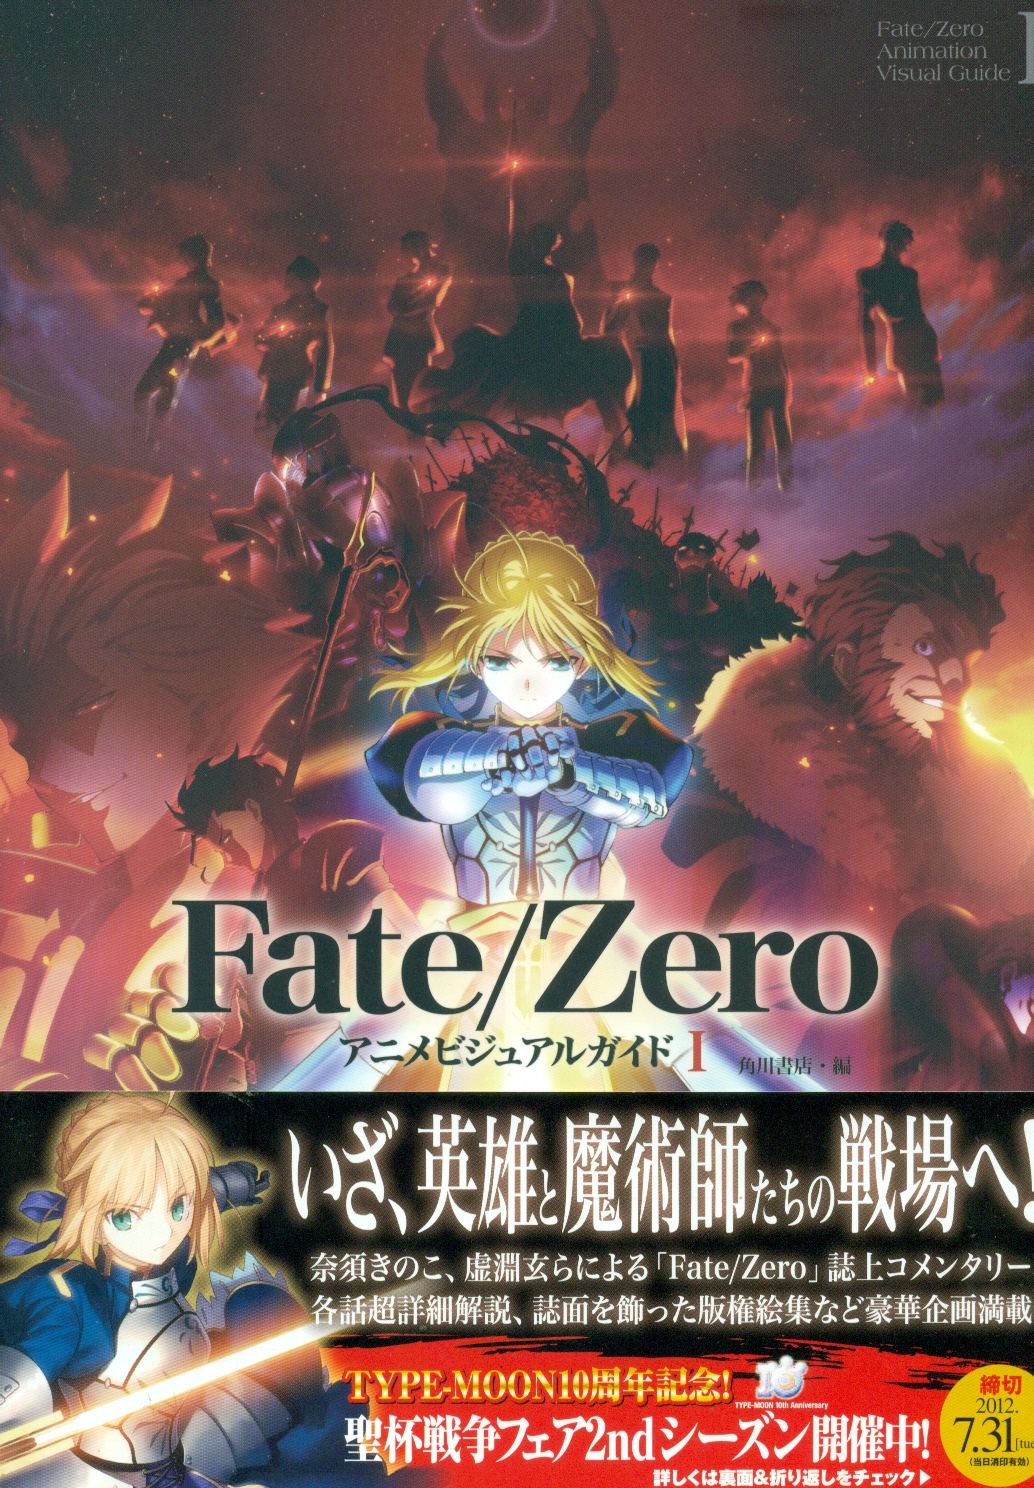 Fate Zero Animation Visual Guide I